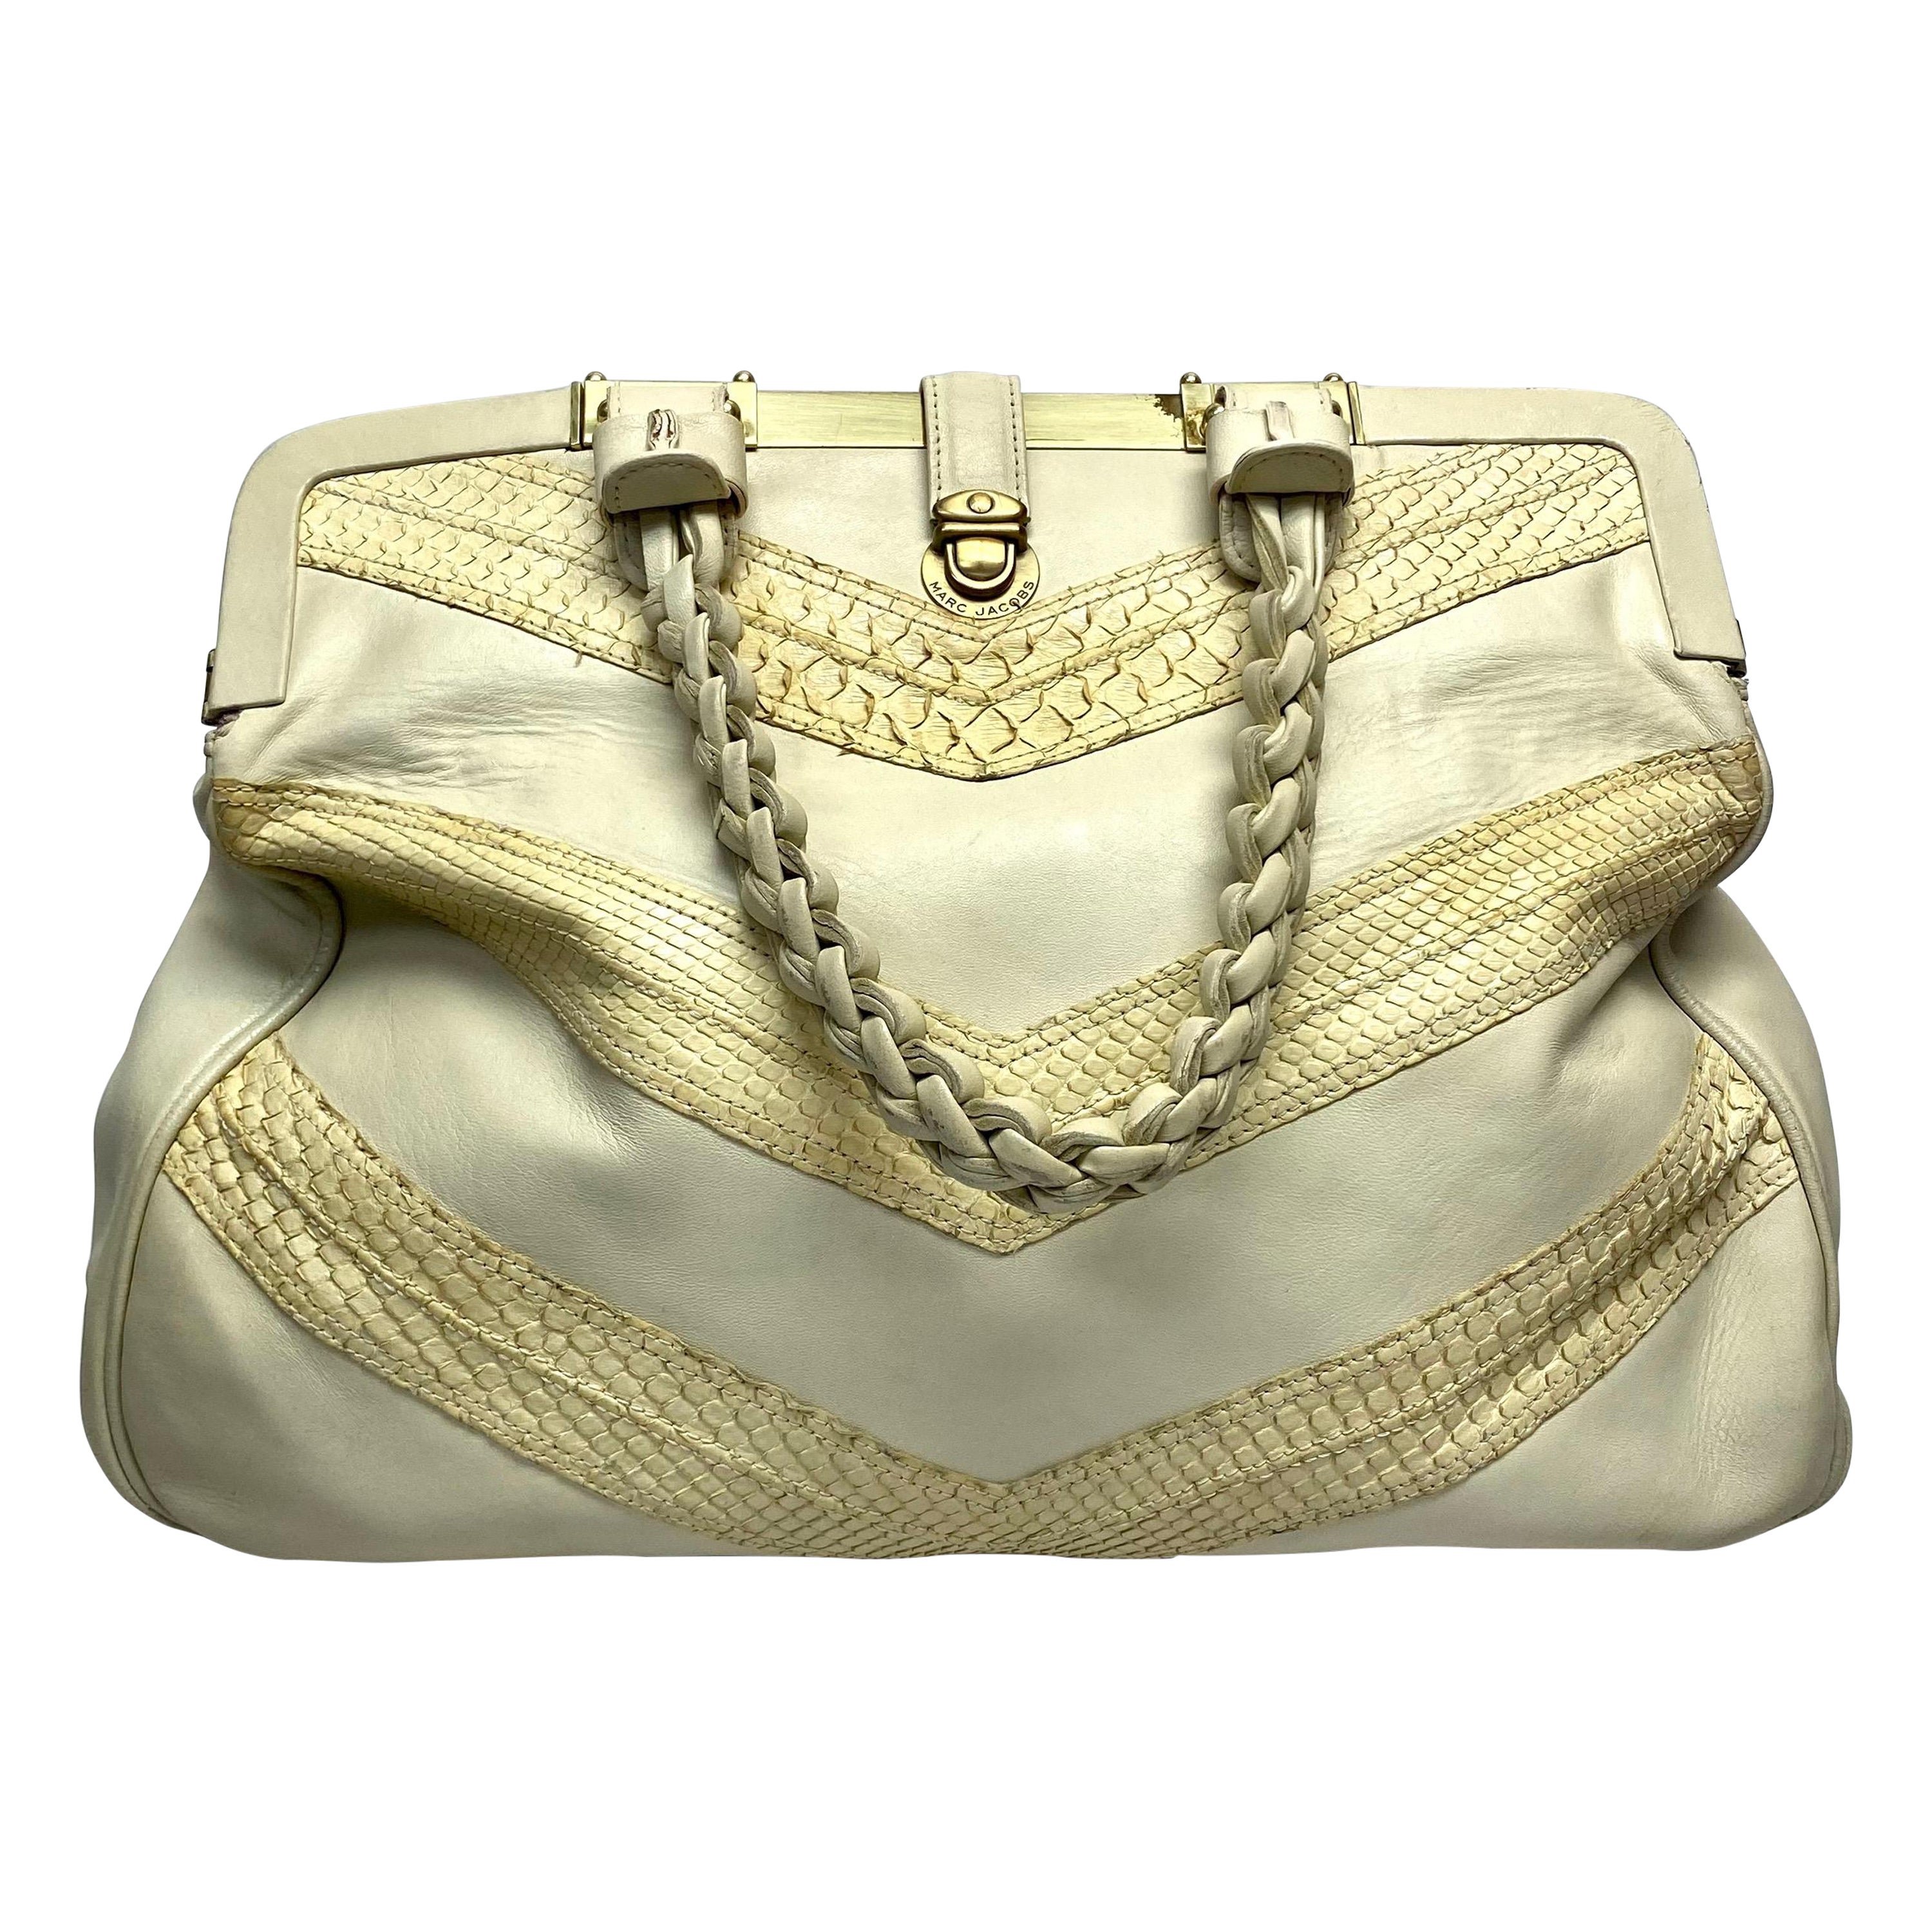 Marc Jacobs Beige Python Leather Handbag For Sale